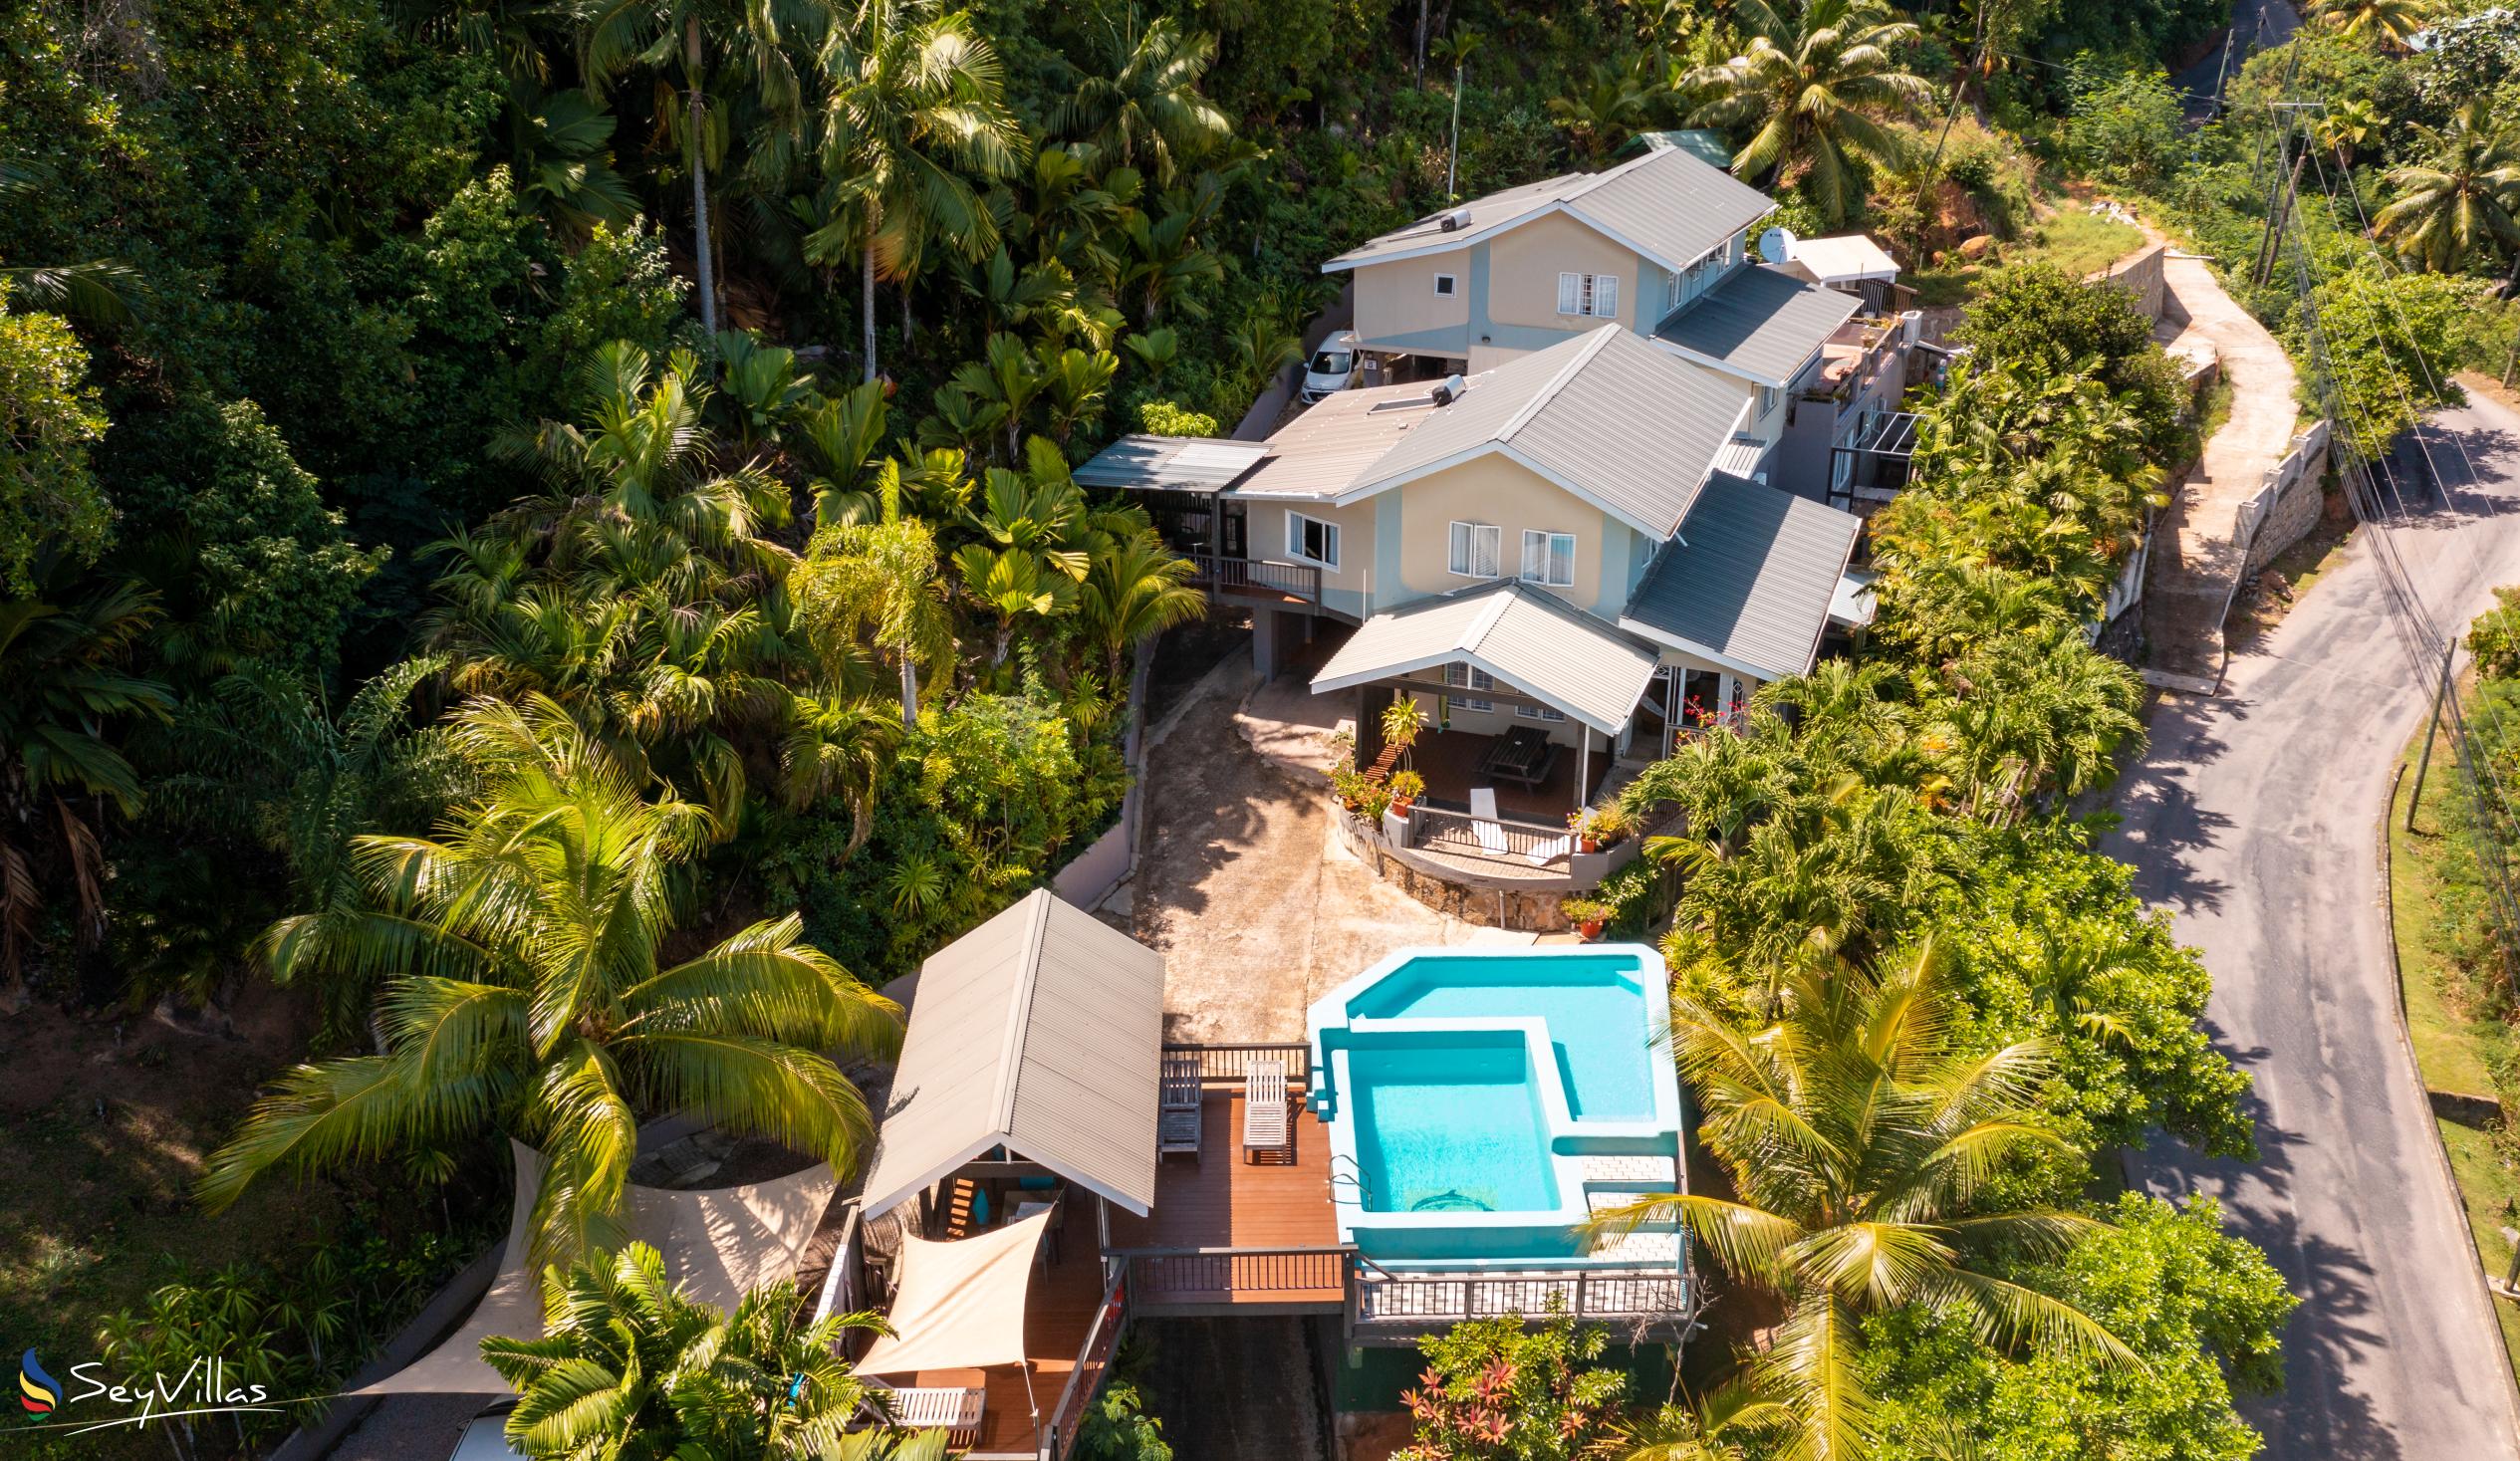 Photo 3: Stephna Residence - Outdoor area - Mahé (Seychelles)